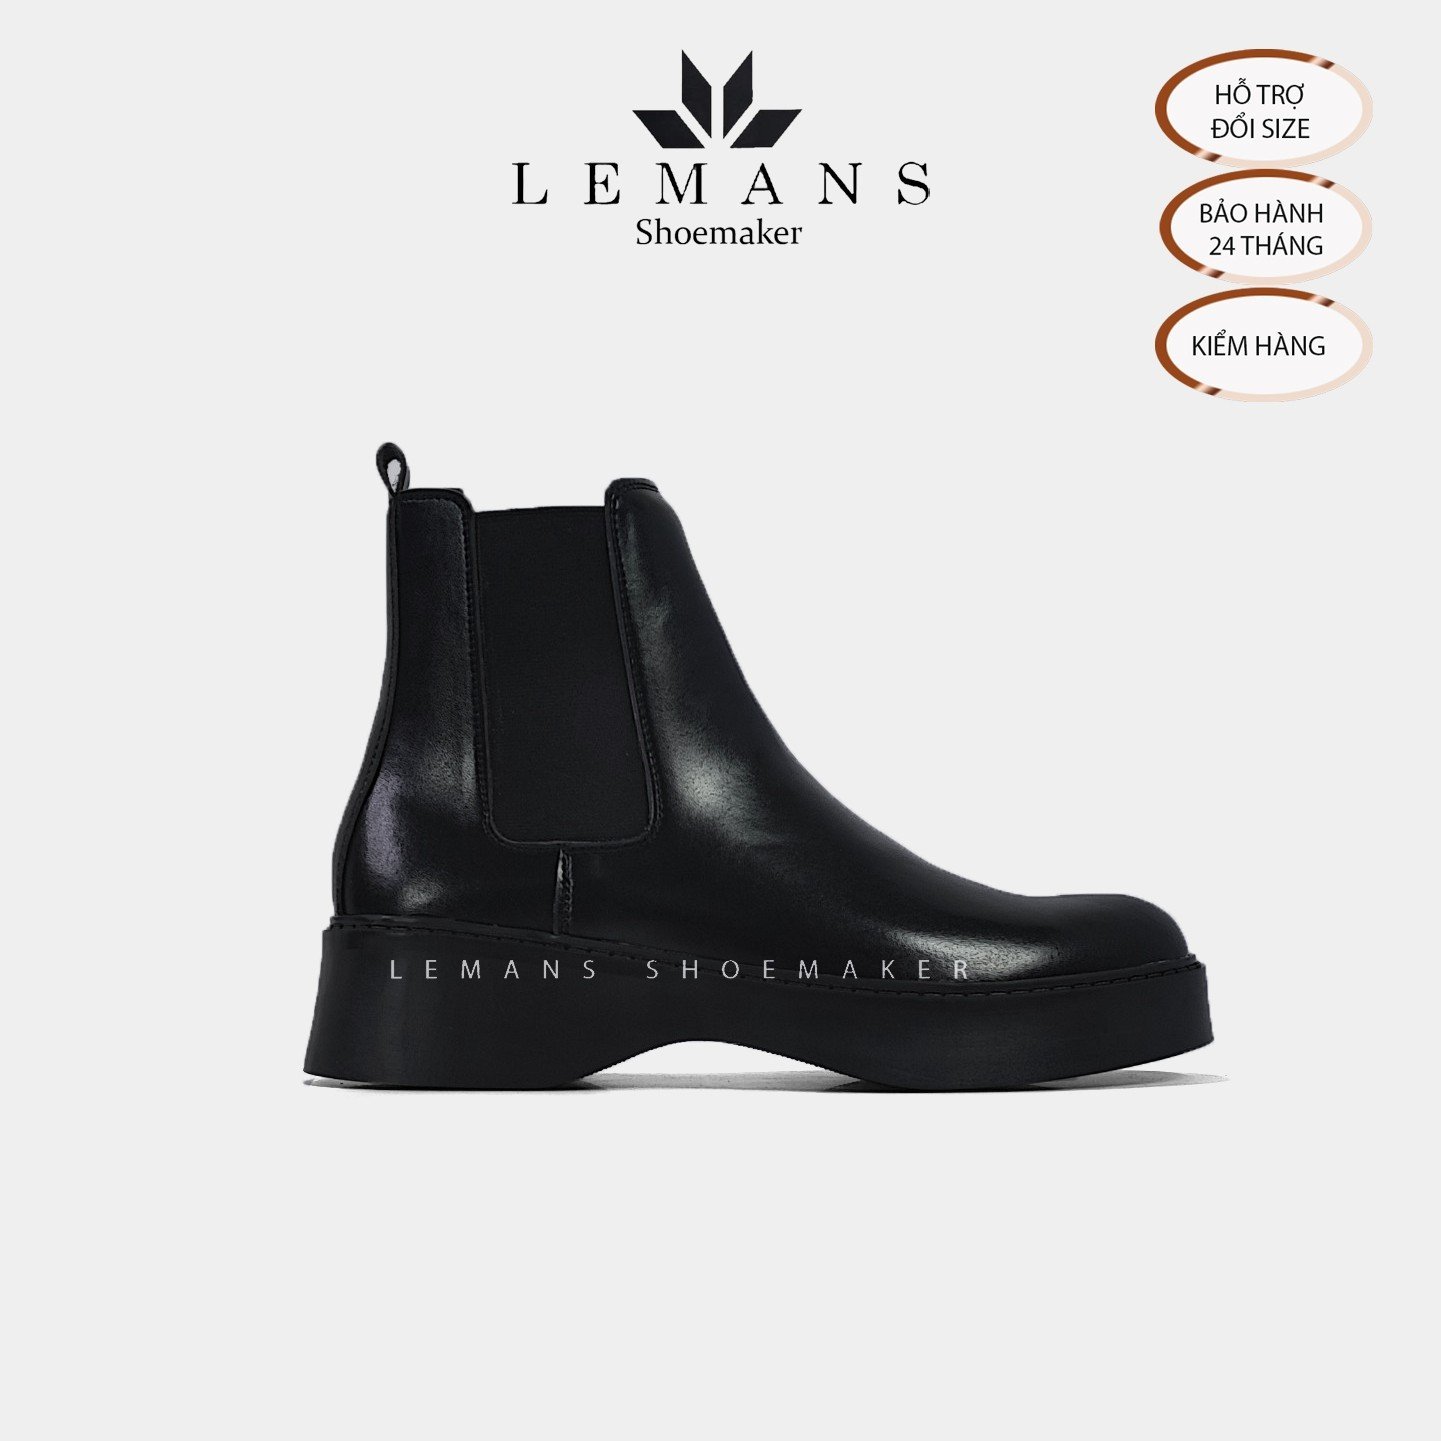 The Breakthrough Chunky CHELSEA Boots Lemans - BST độc quyền, đế cao 6cm Full cao su nguyên khối Da bò nguyên tấm BH 24T